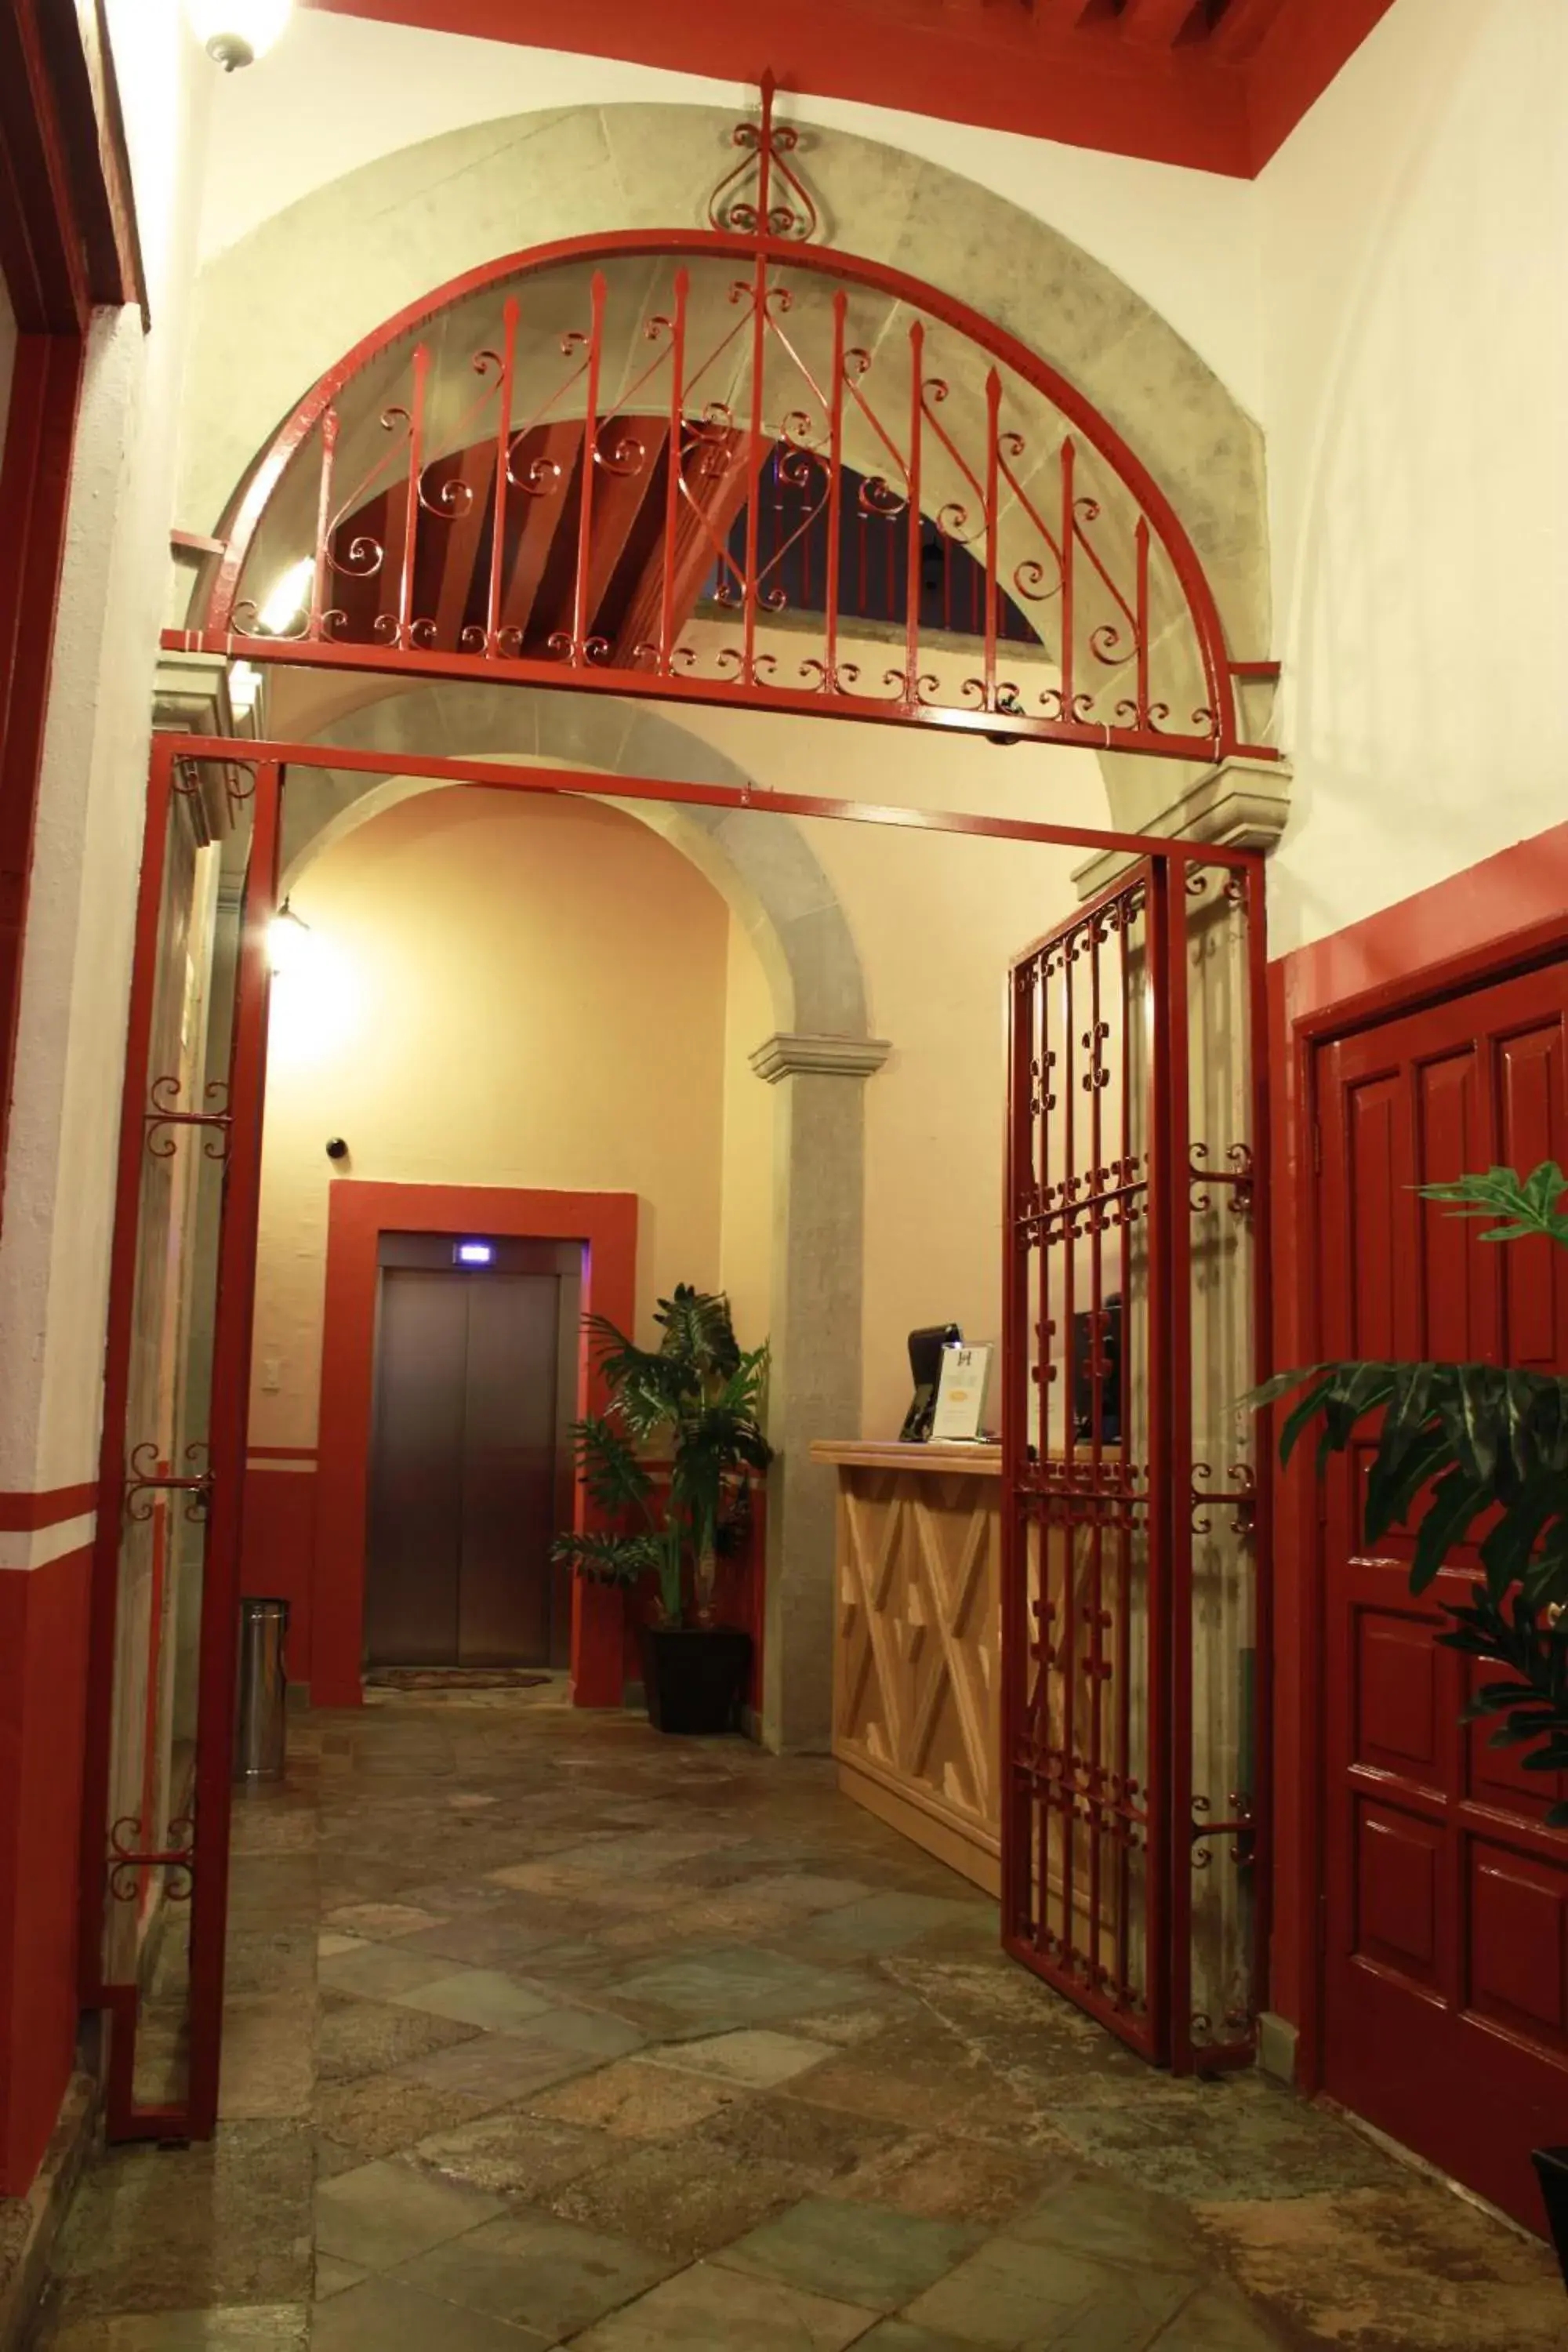 Lobby or reception in Hotel de la Paz